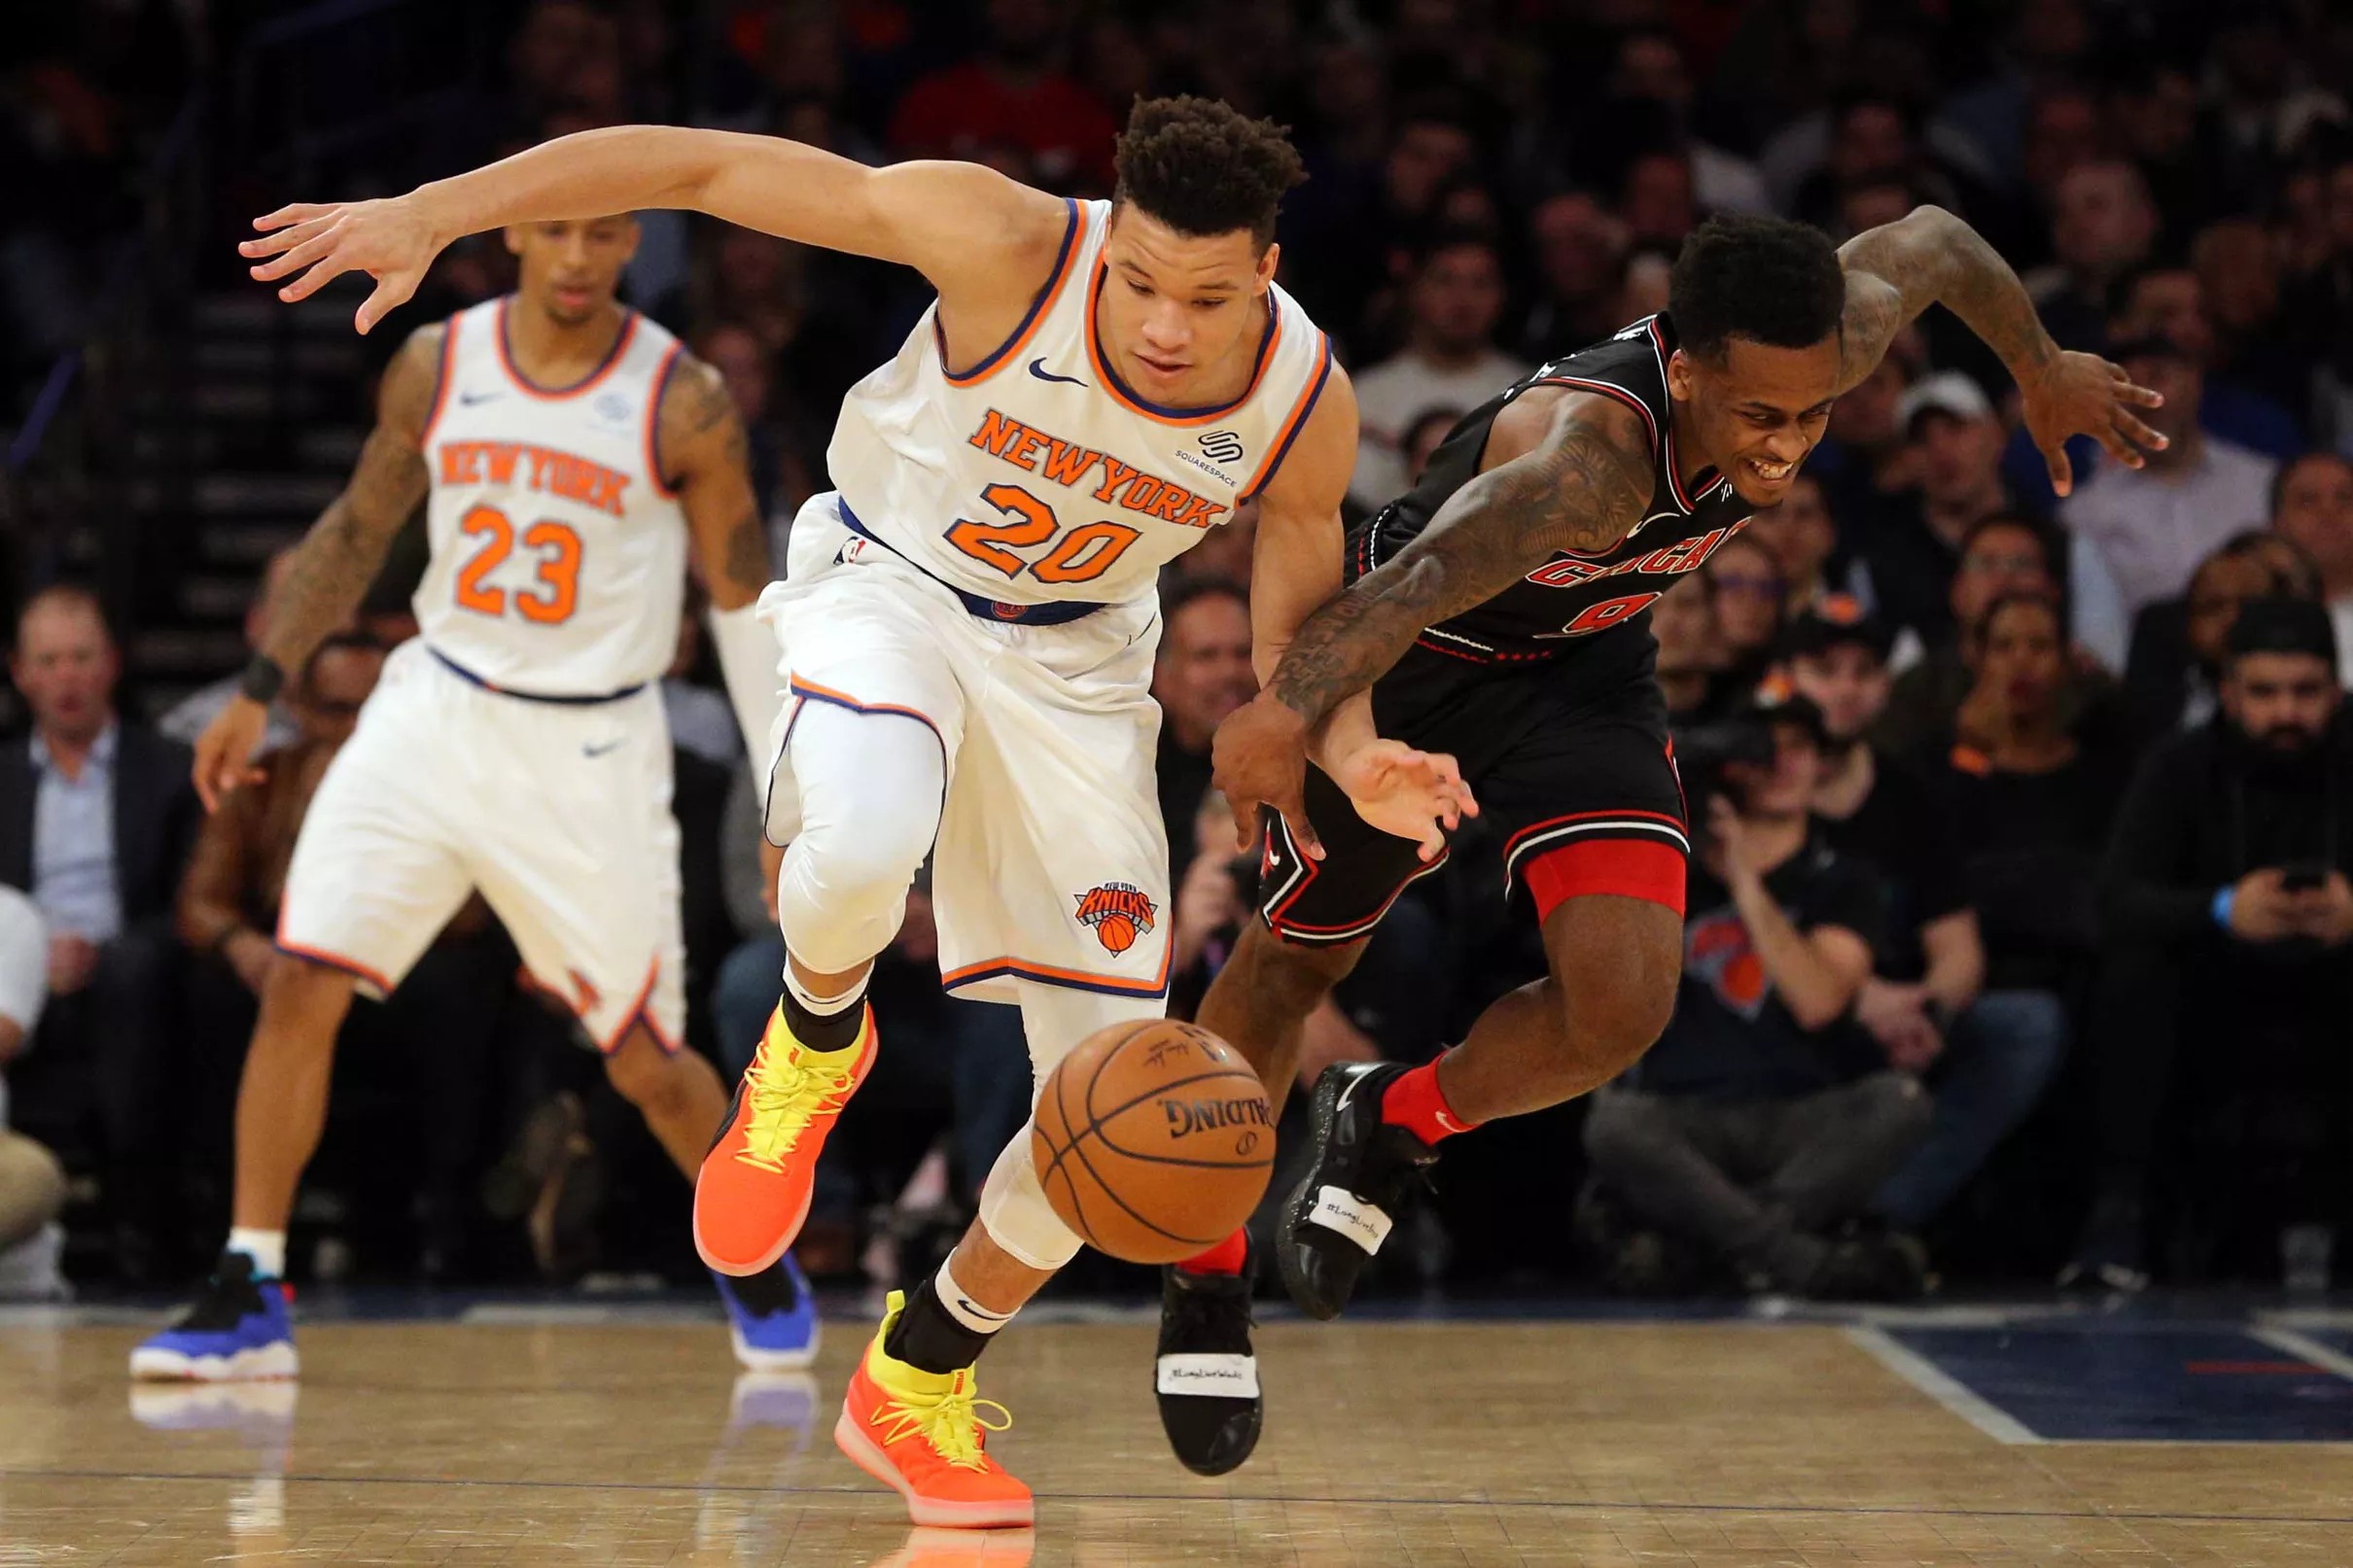 Bulls vs. Knicks final score Zach Lavine’s 41st point mercifully ends